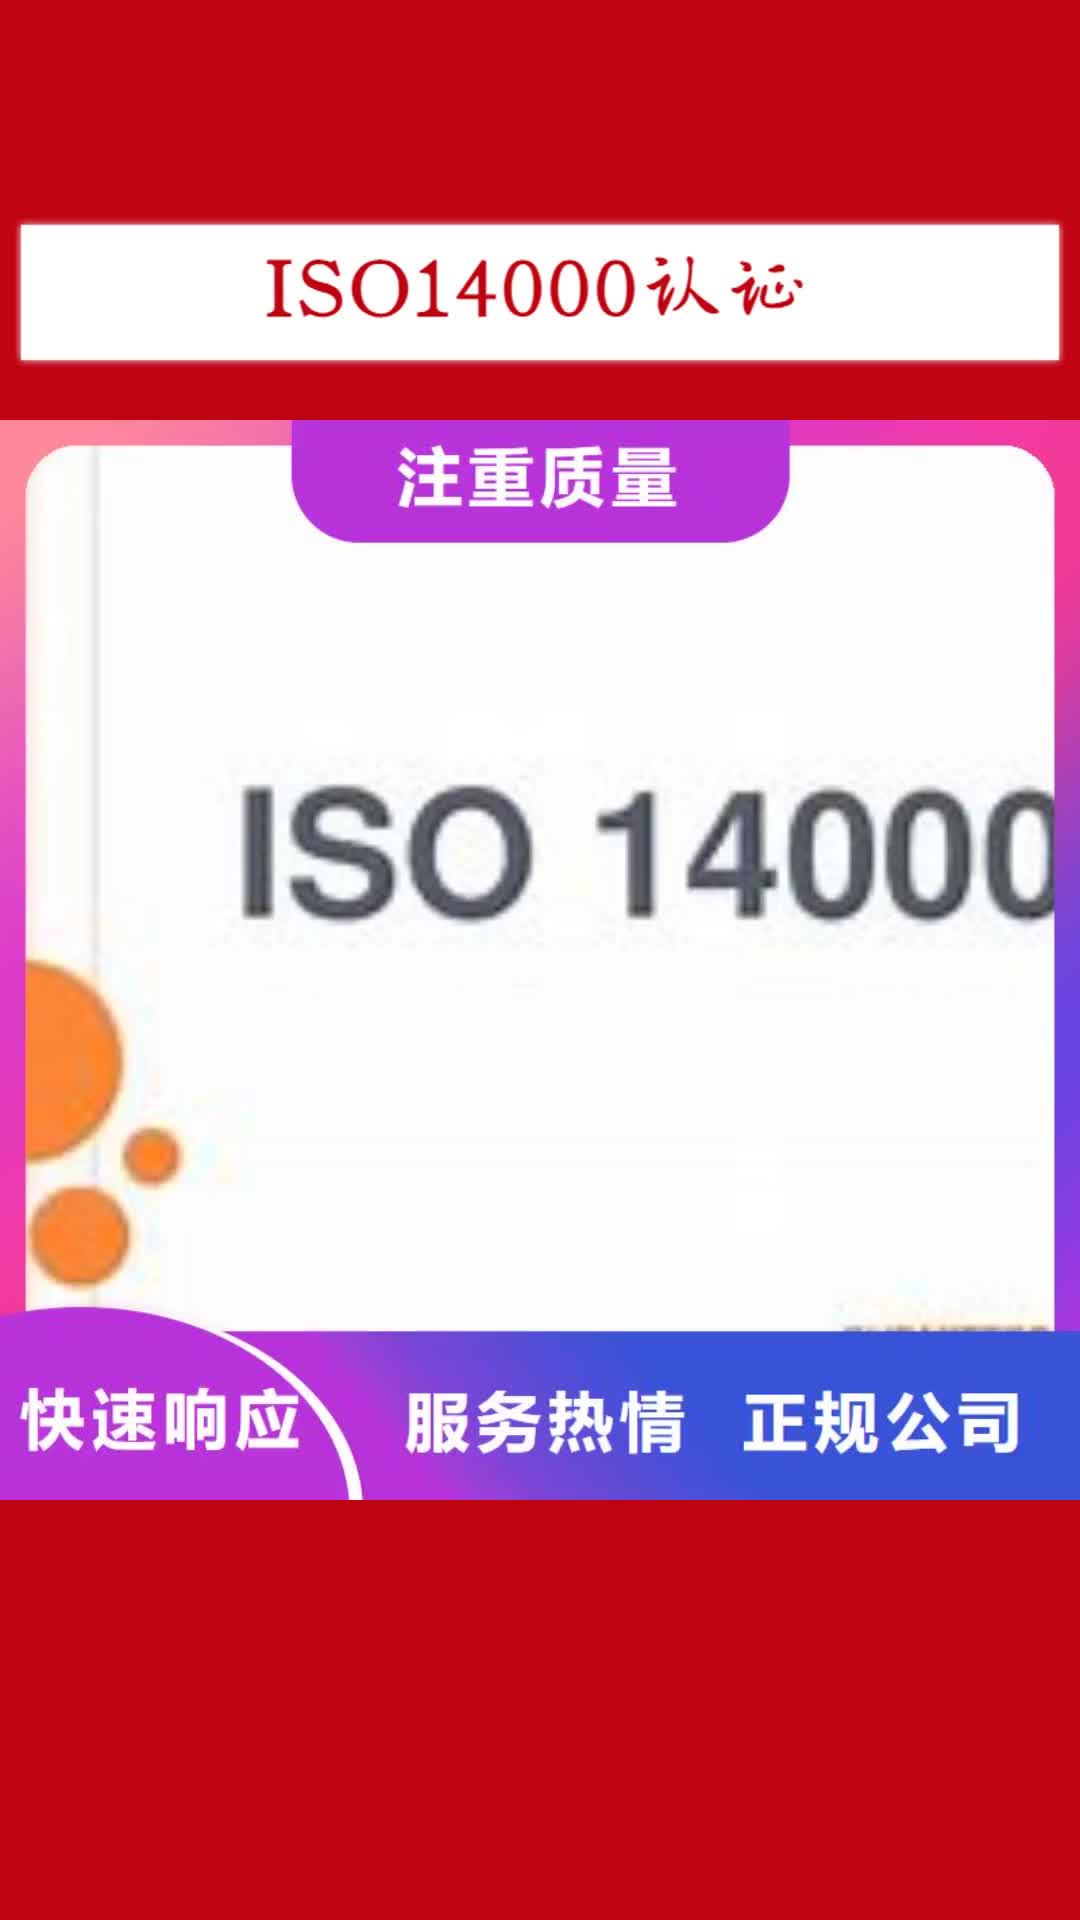 三亚 ISO14000认证 【HACCP认证】欢迎合作